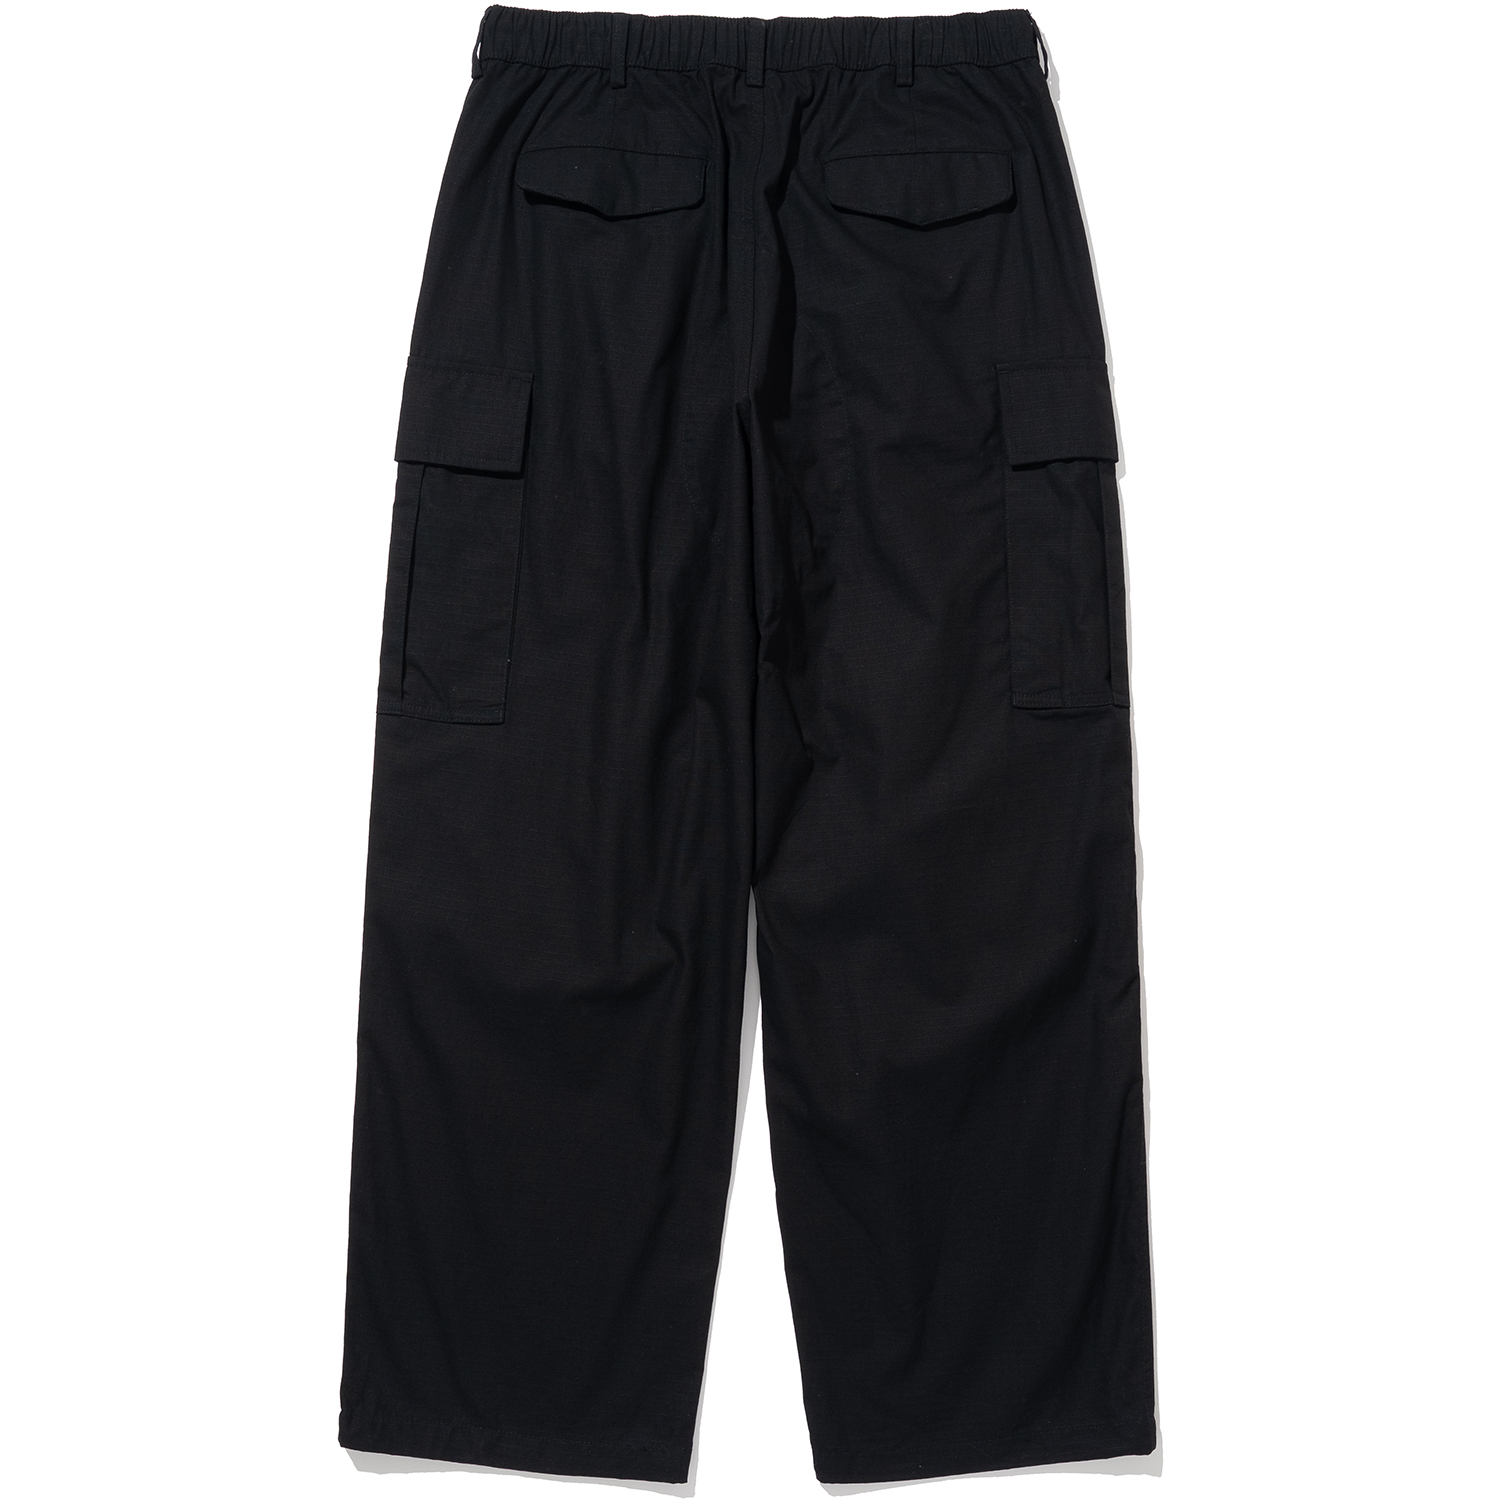 Ripstop Utility Cargo Pants - Black,NOT4NERD